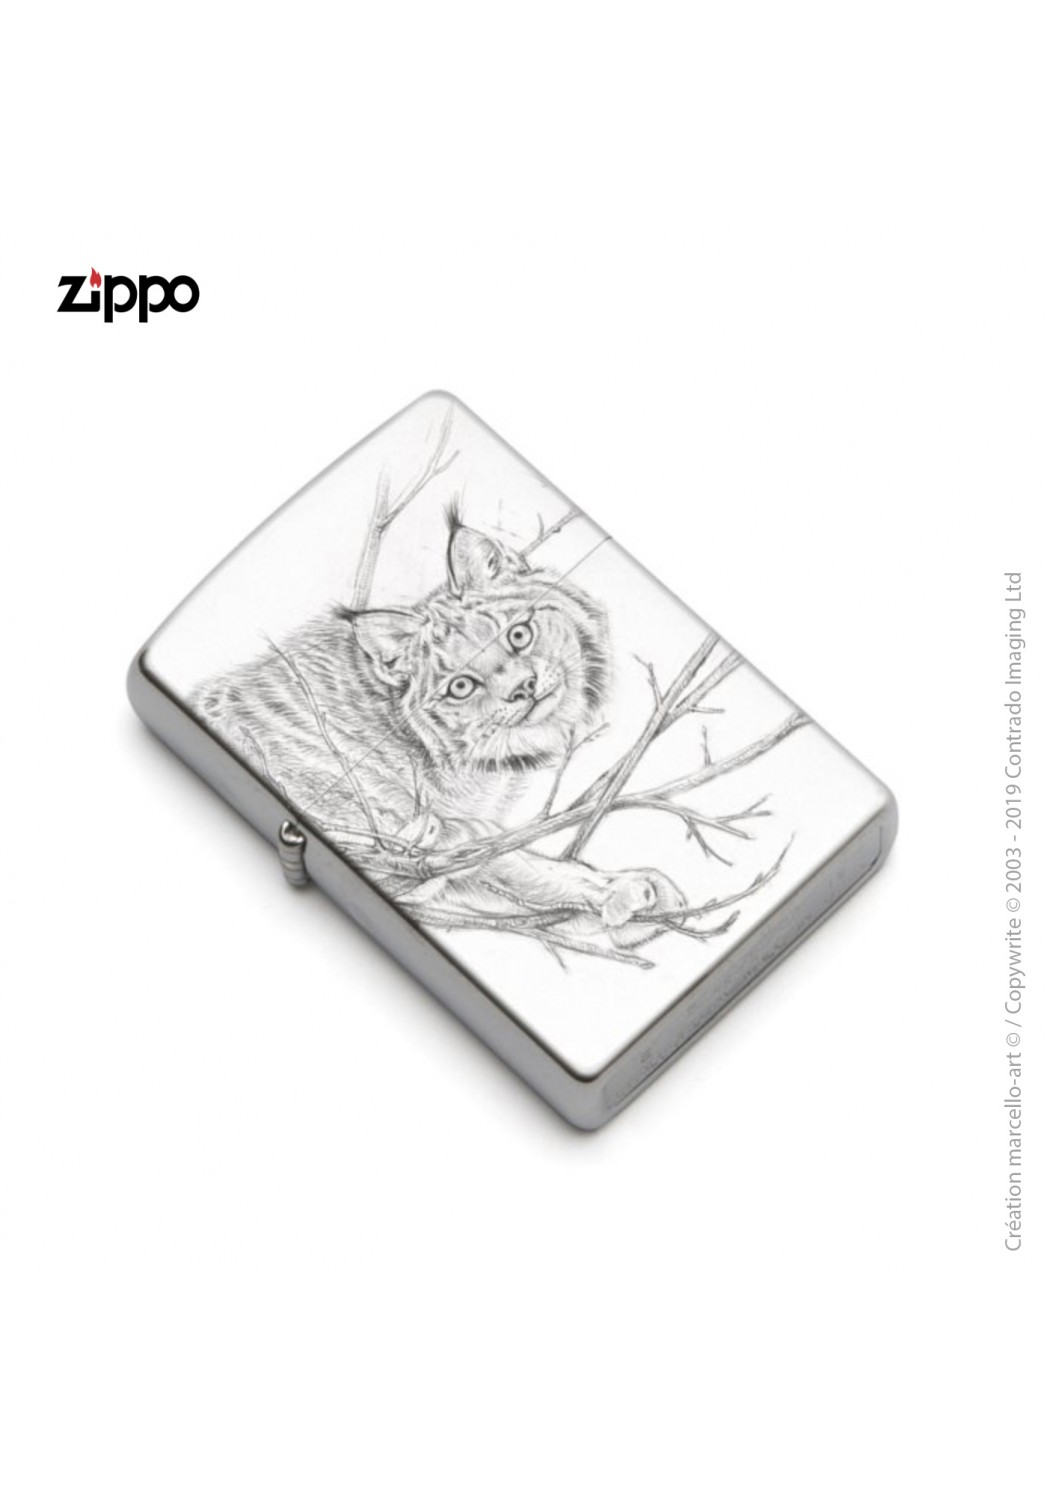 Marcello-art : Accessoires de décoration Zippo 393 lynx